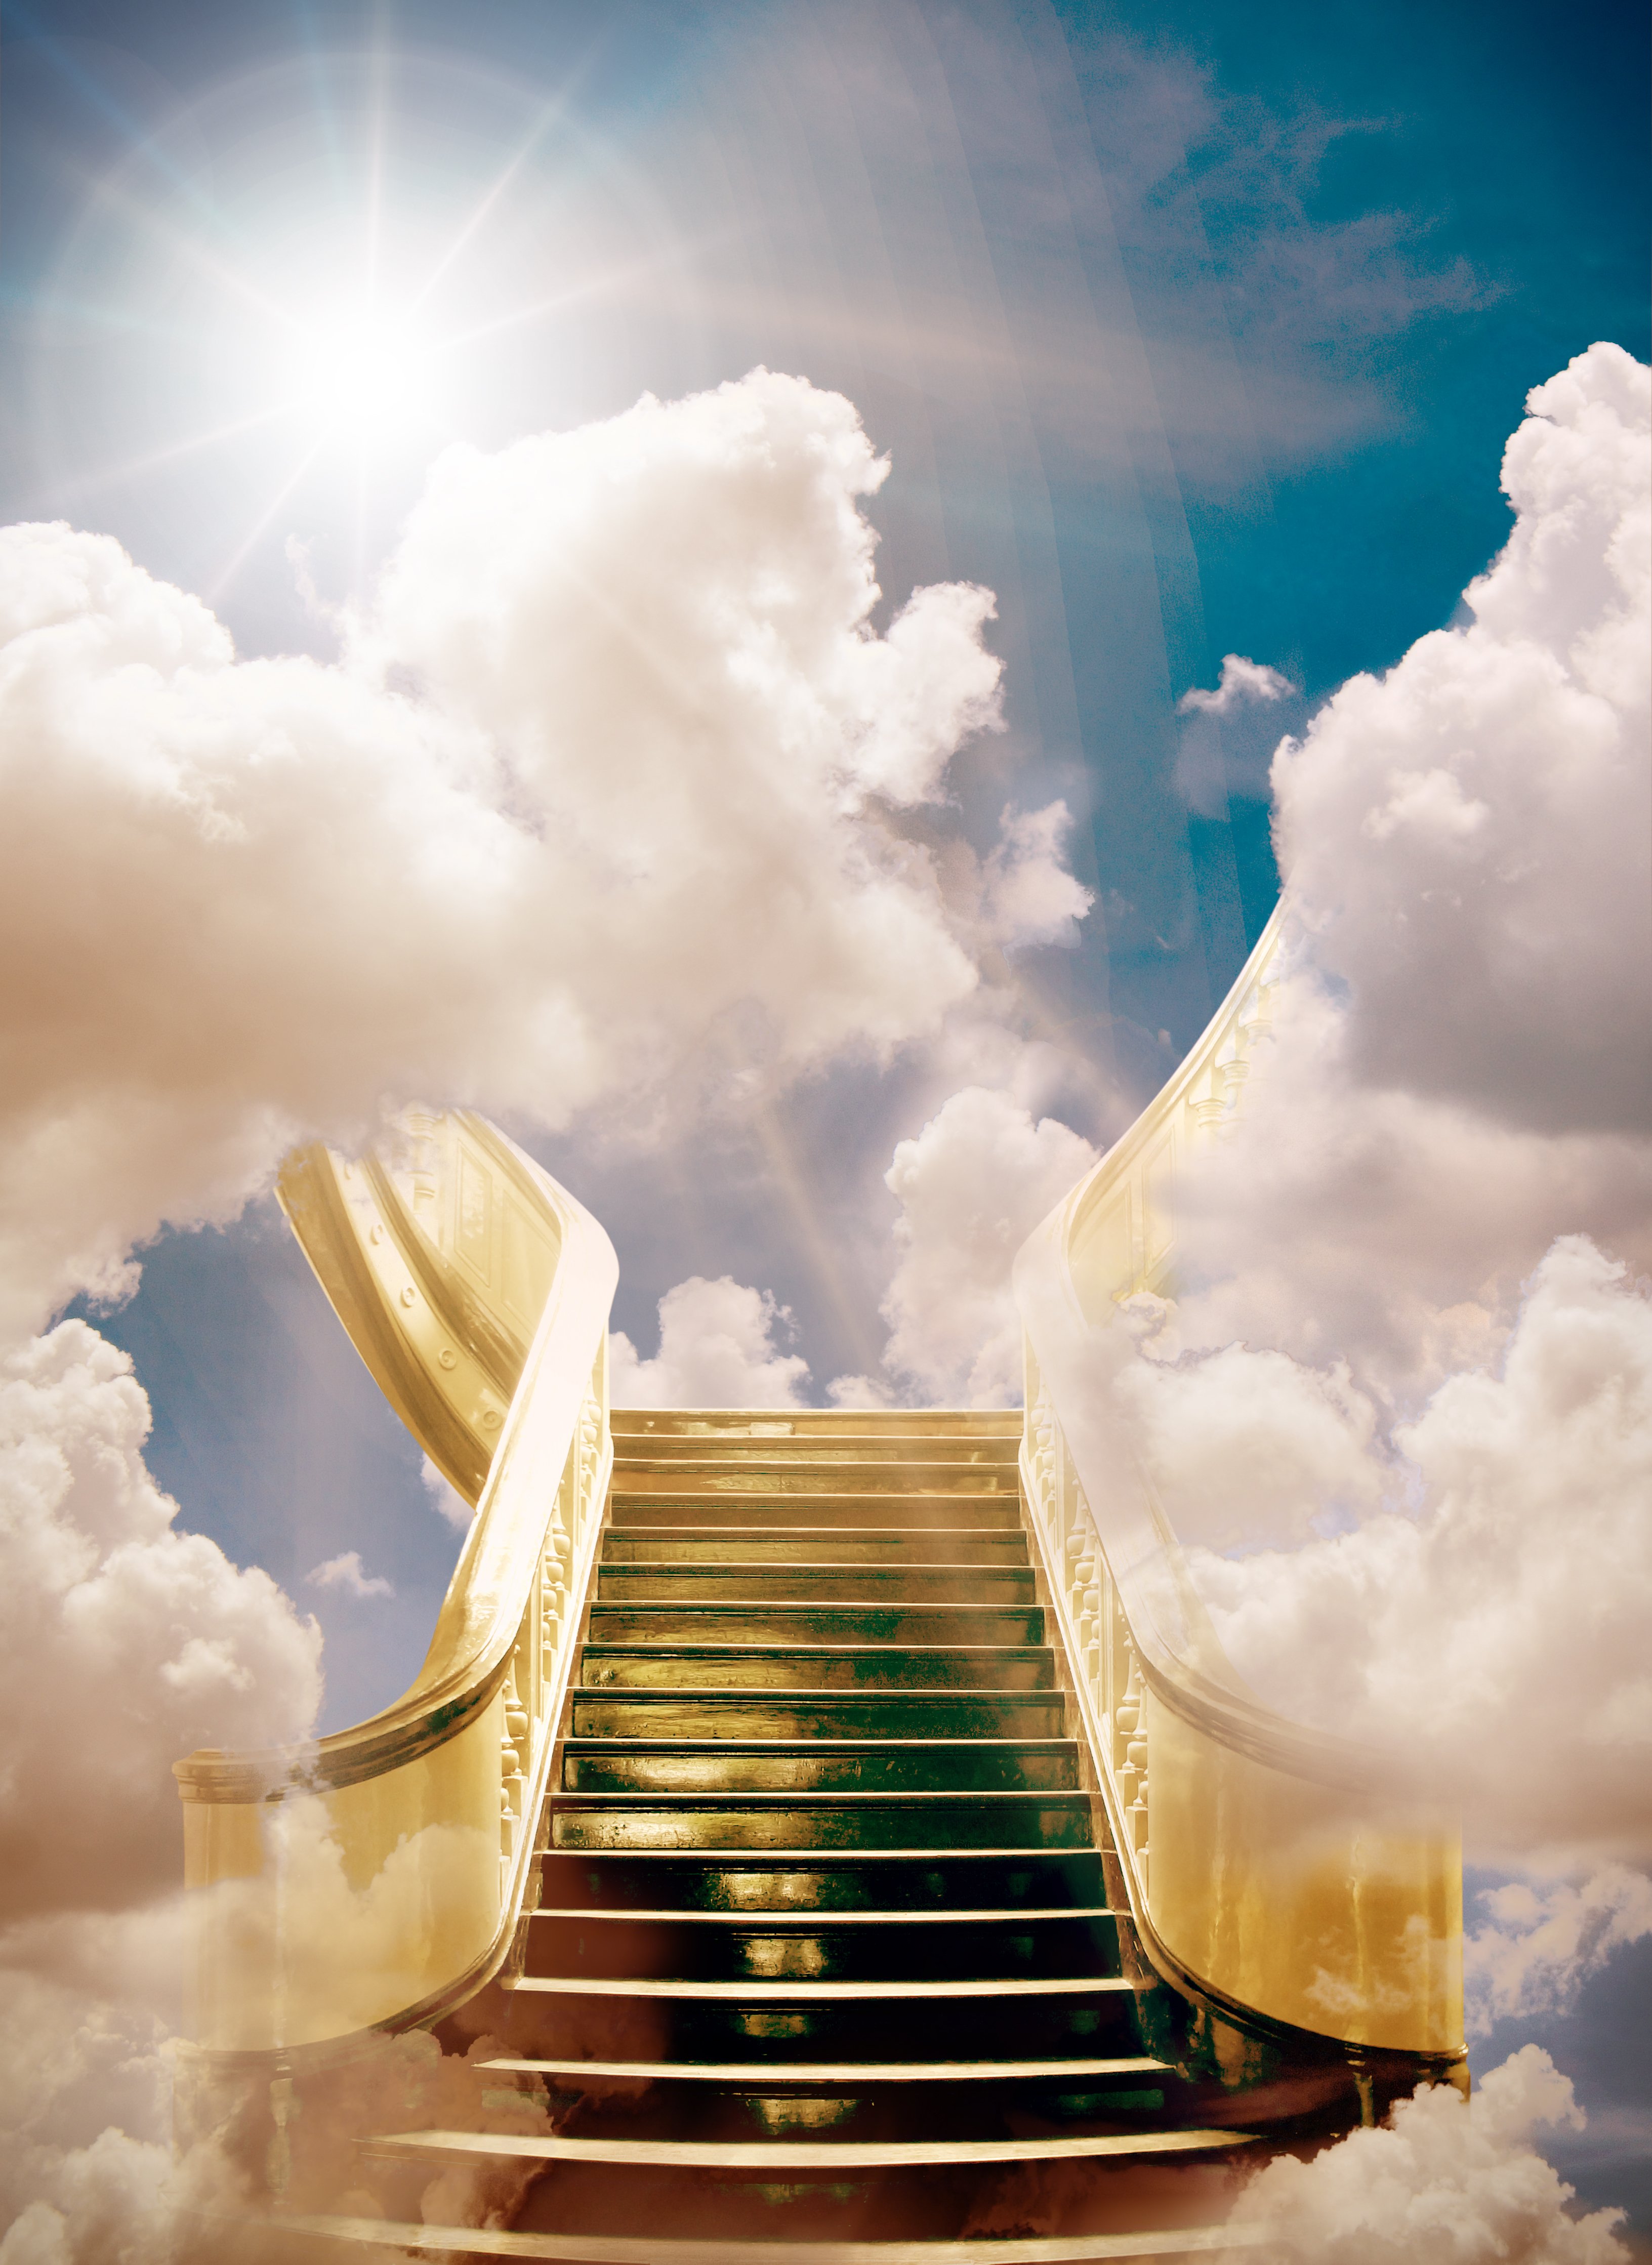 Stairway to heaven | Source: Shutterstock